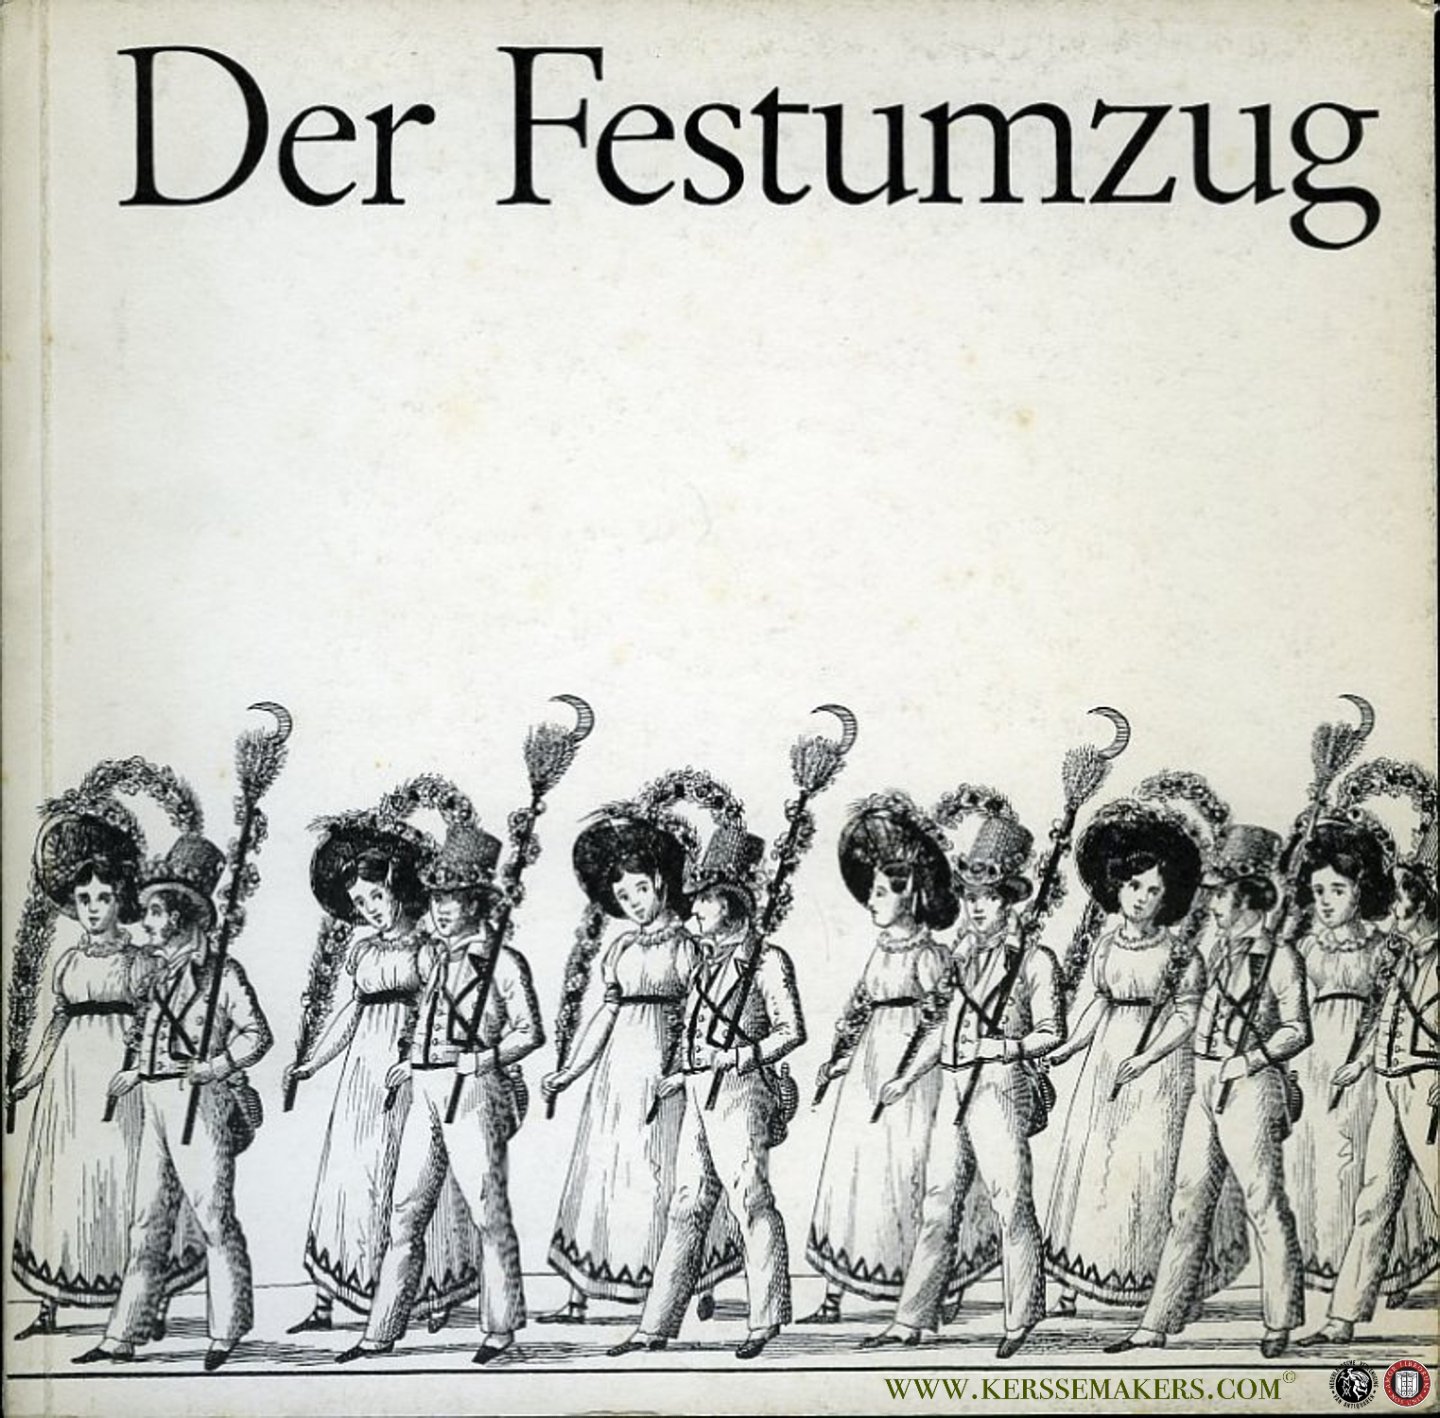 GANTNER, Theo - Der Festumzug. Ein volkskundlicher Beitrag zum Festwesen des 19. Jahrhunderts in der Schweiz.